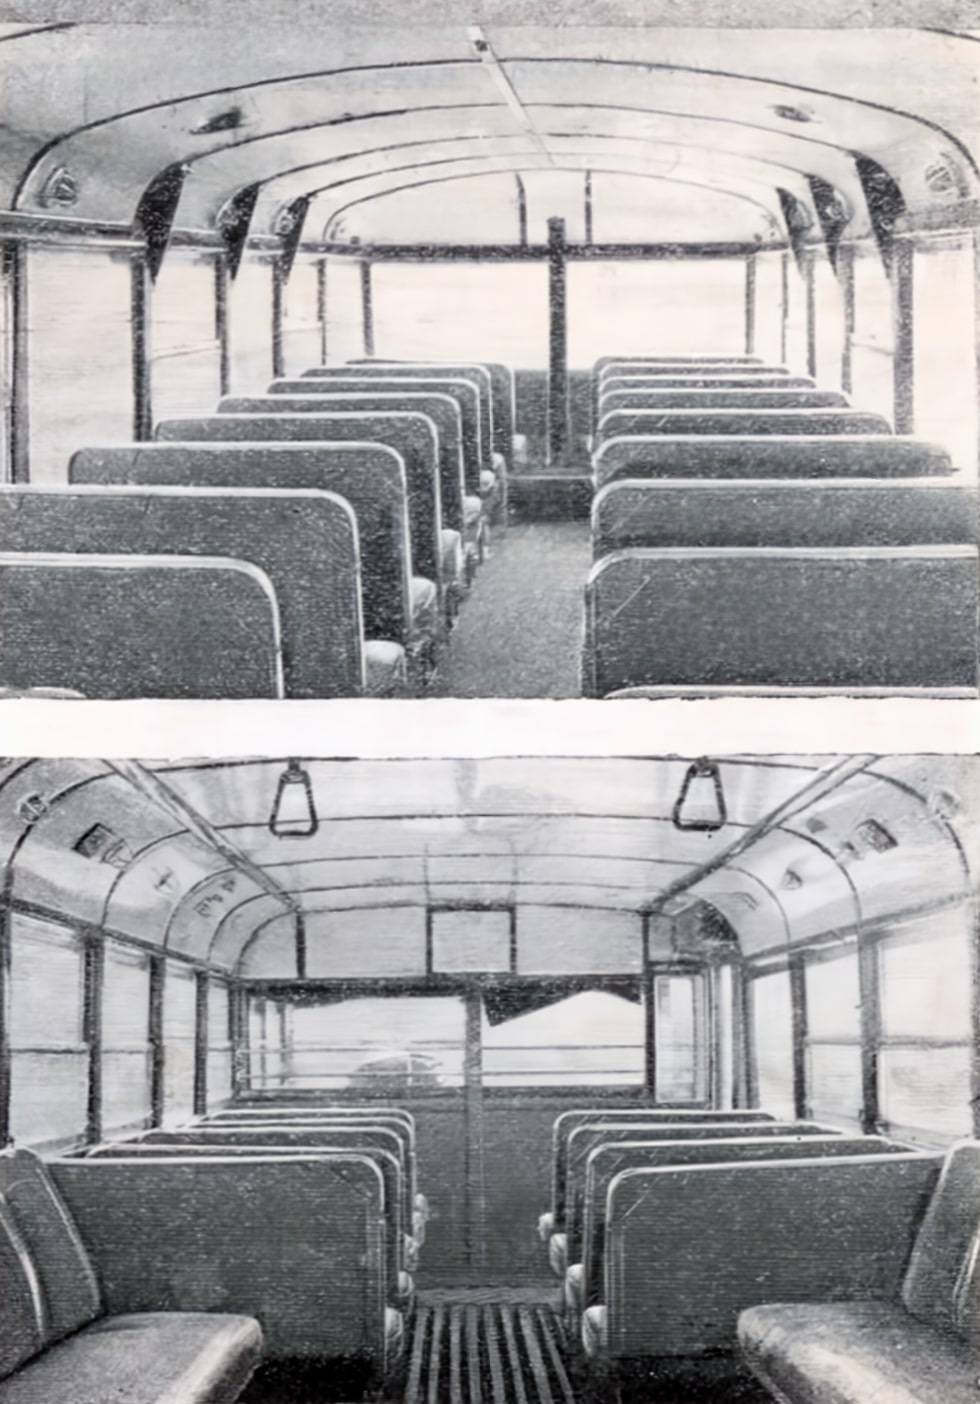 Москва, ЯТБ-3 № 1010; Москва — Исторические фотографии — Двухэтажные троллейбусы (1937-1953)